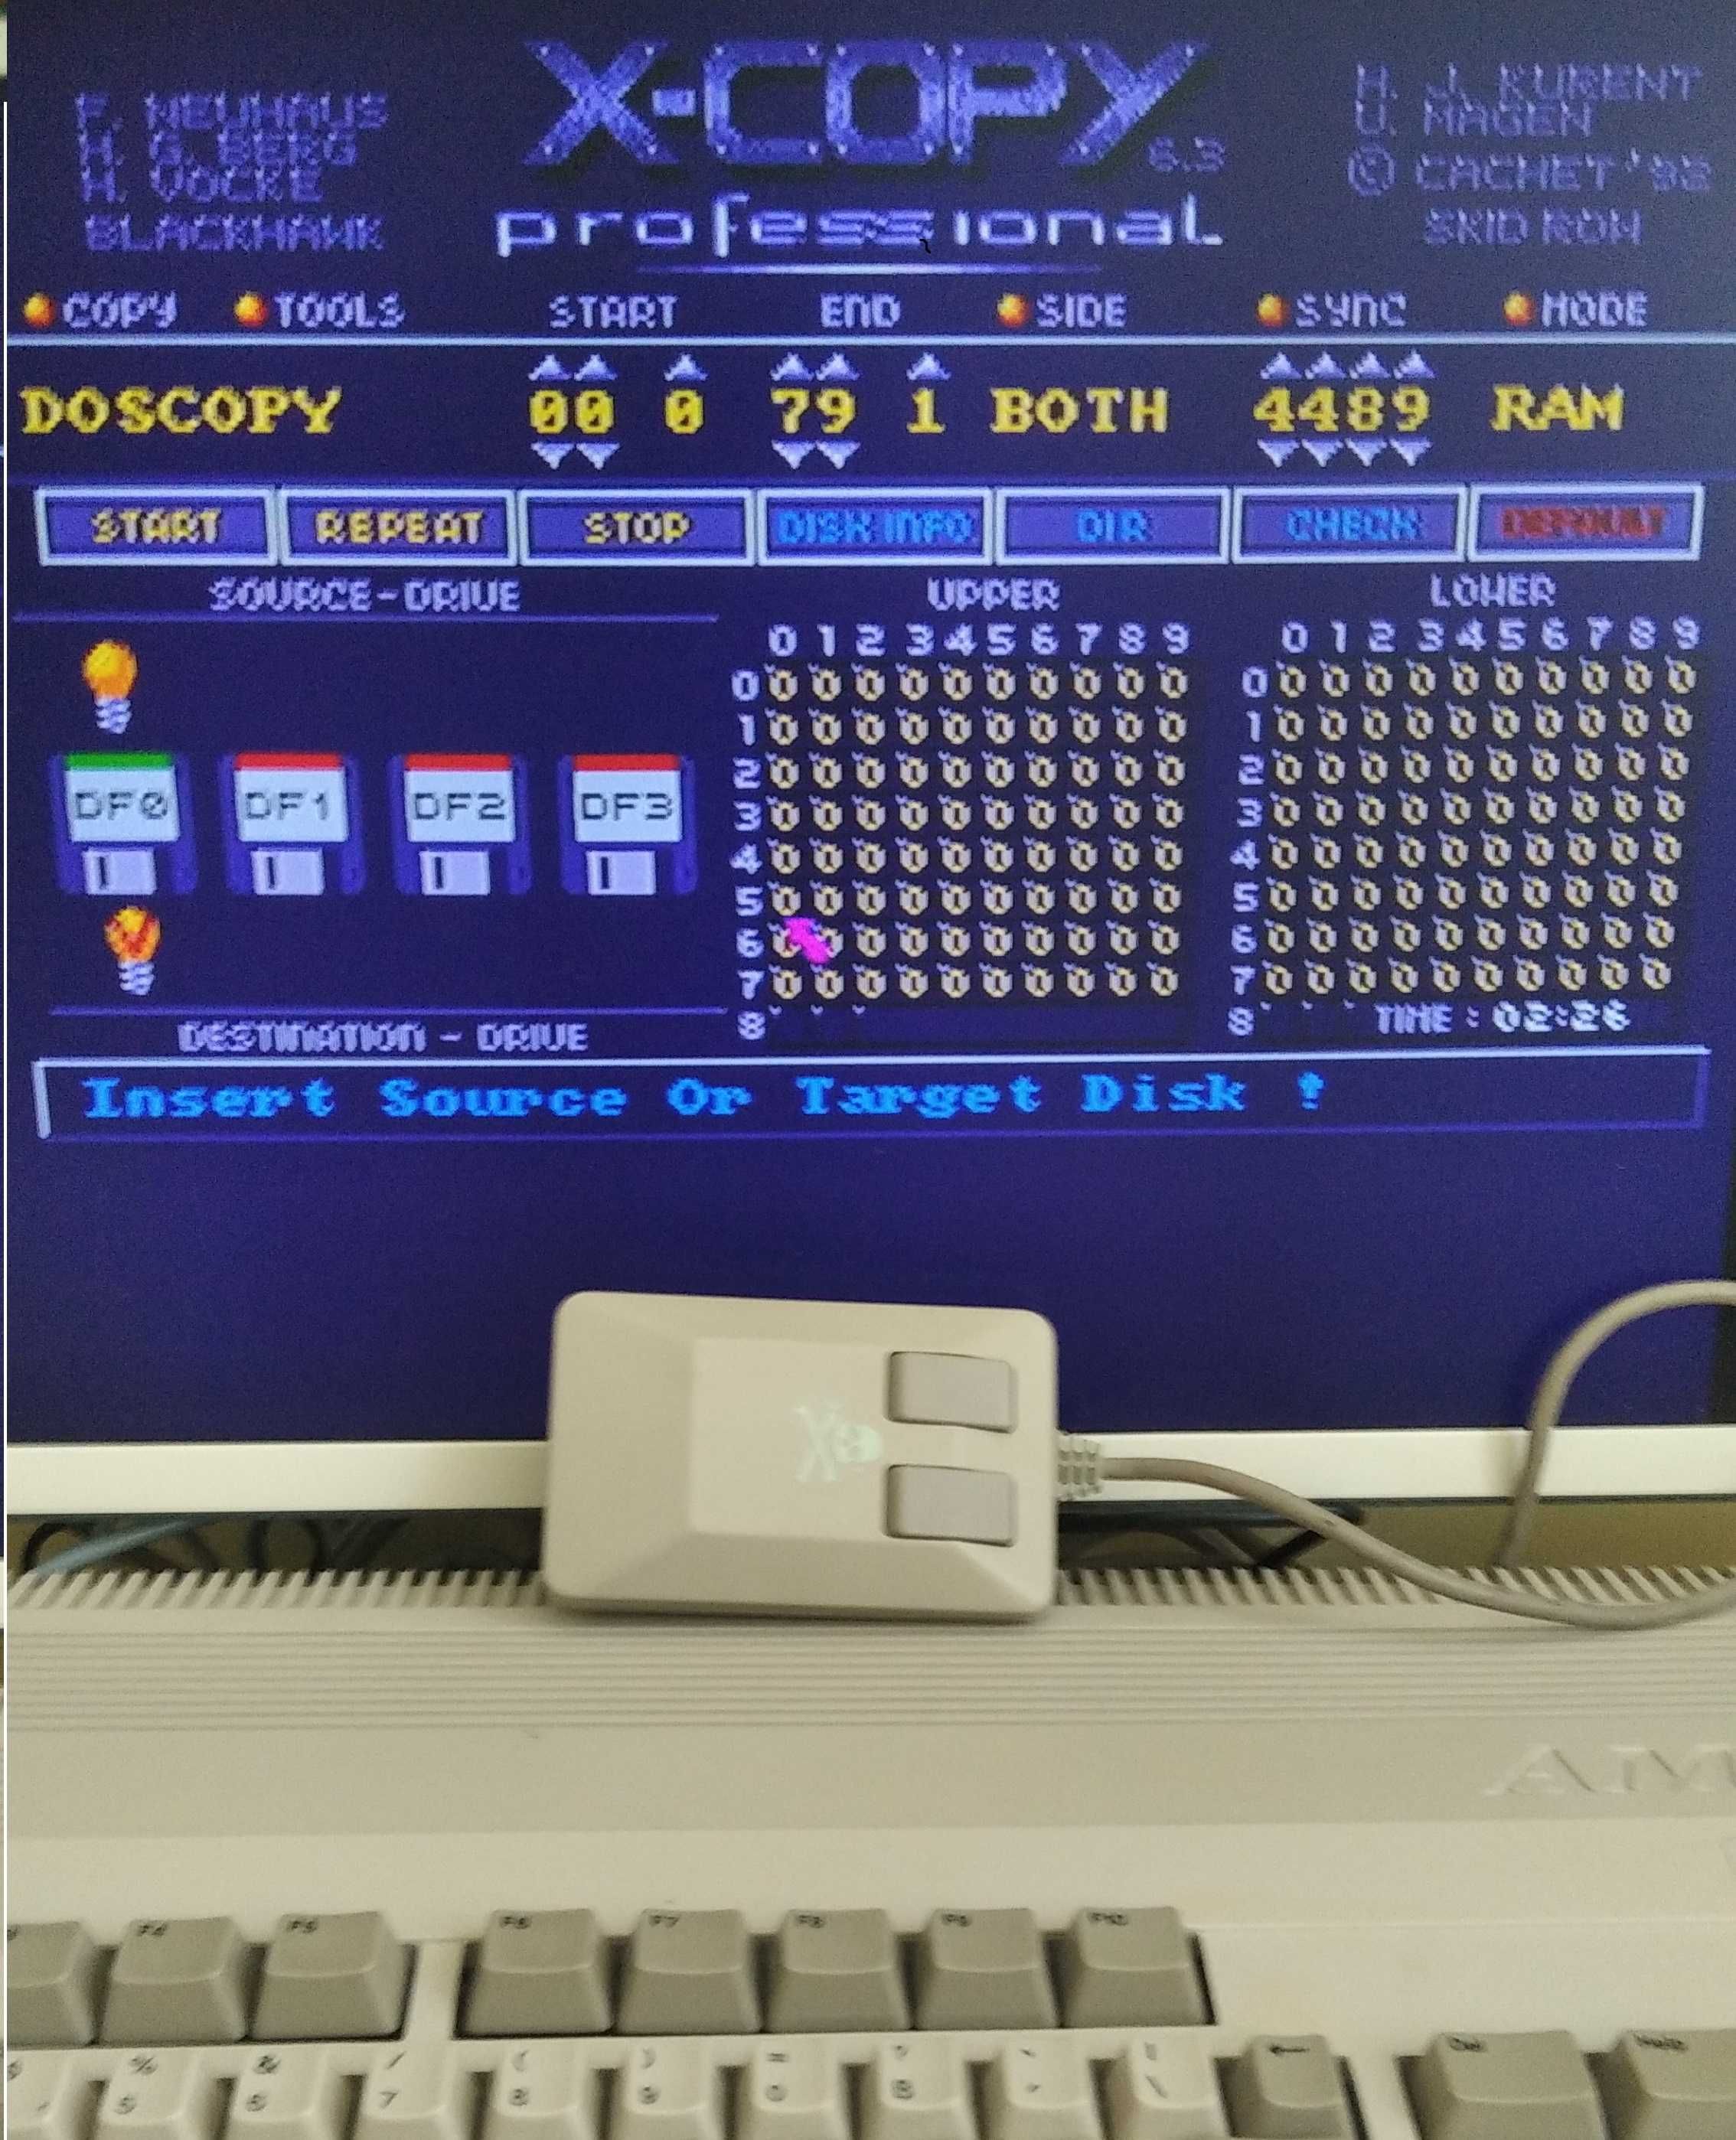 Amiga 500_1,5 MB Ram